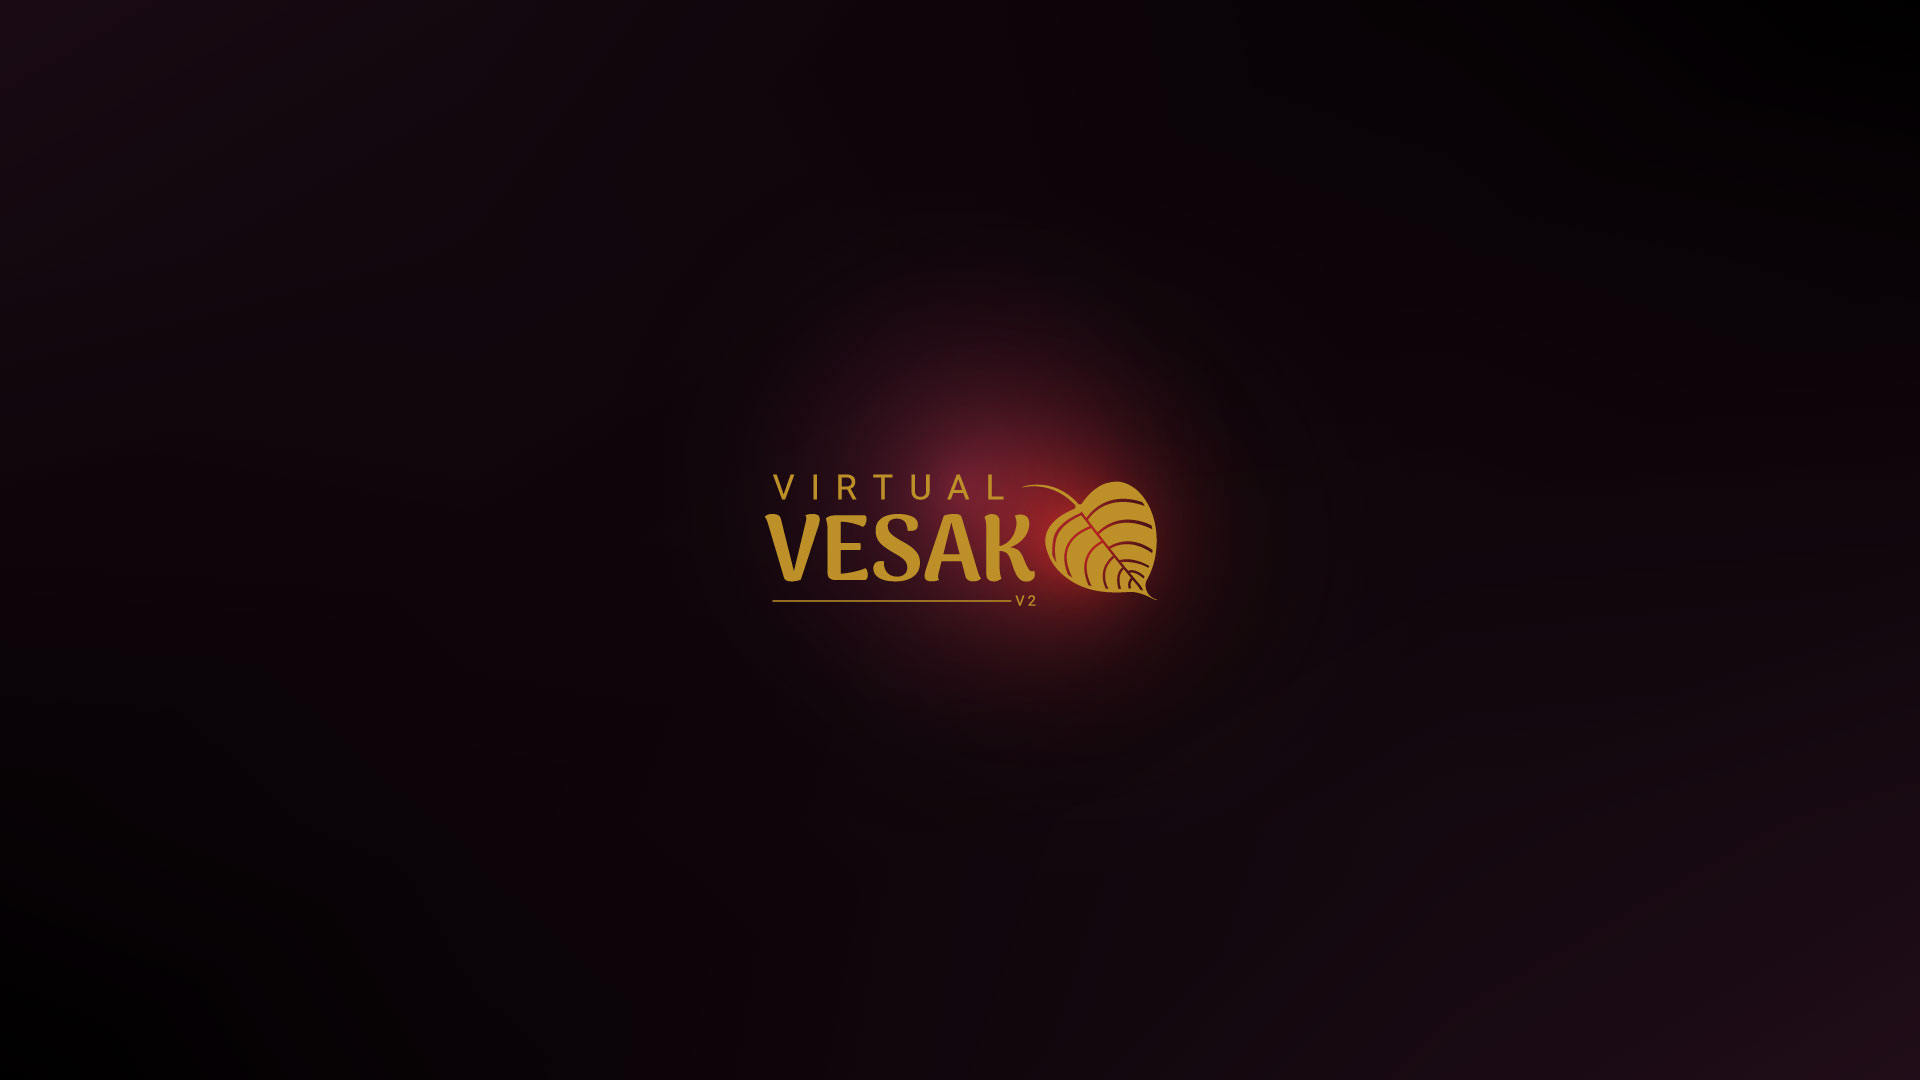 Virtual Vesak V2